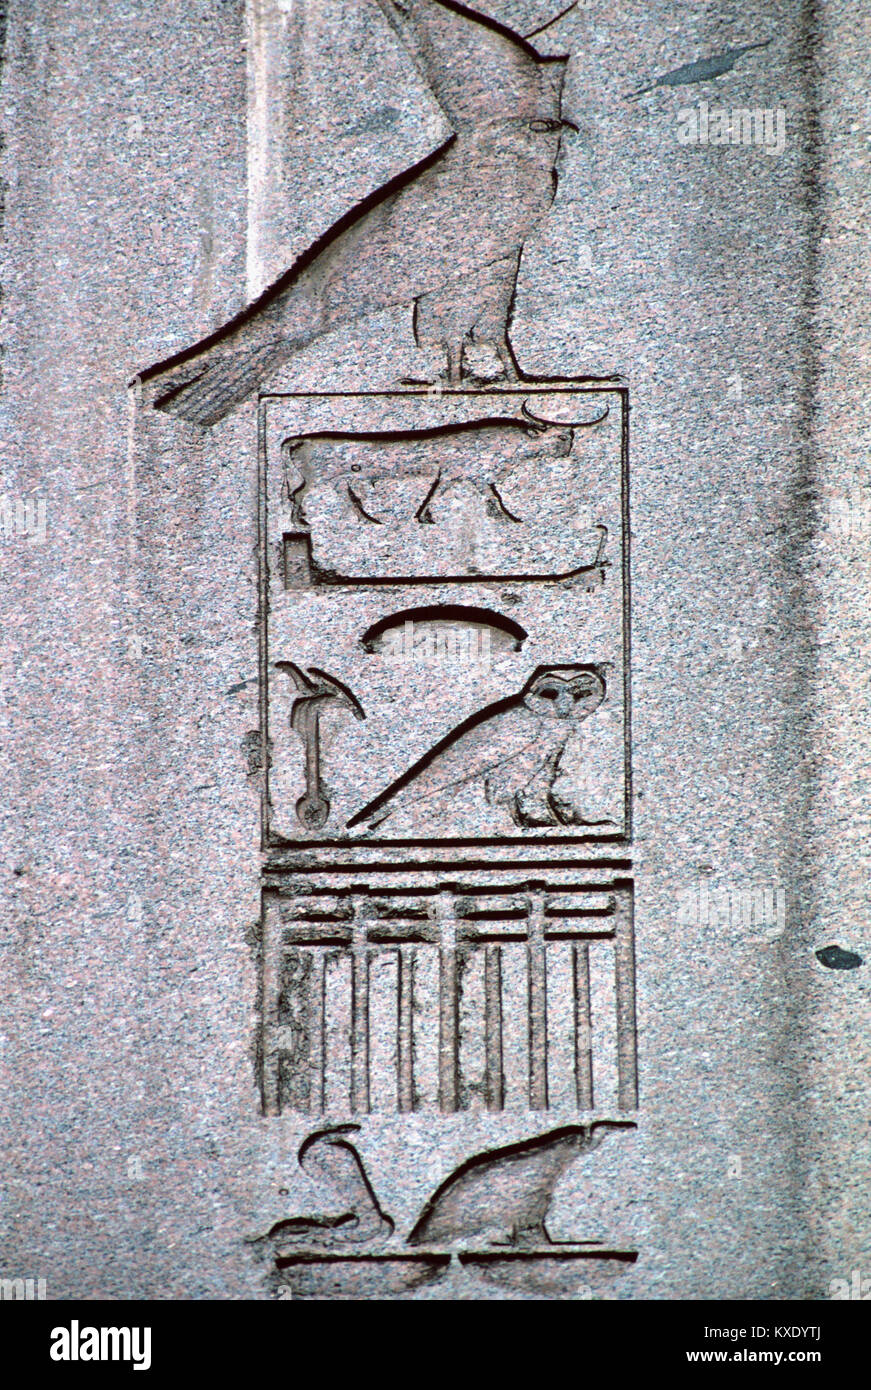 Les hiéroglyphes de l'Égypte ancienne ou des inscriptions hiéroglyphiques et des symboles sur l'obélisque égyptien antique (1549-03) annonce, dans l'Hippodrome, Istanbul, Turquie Banque D'Images